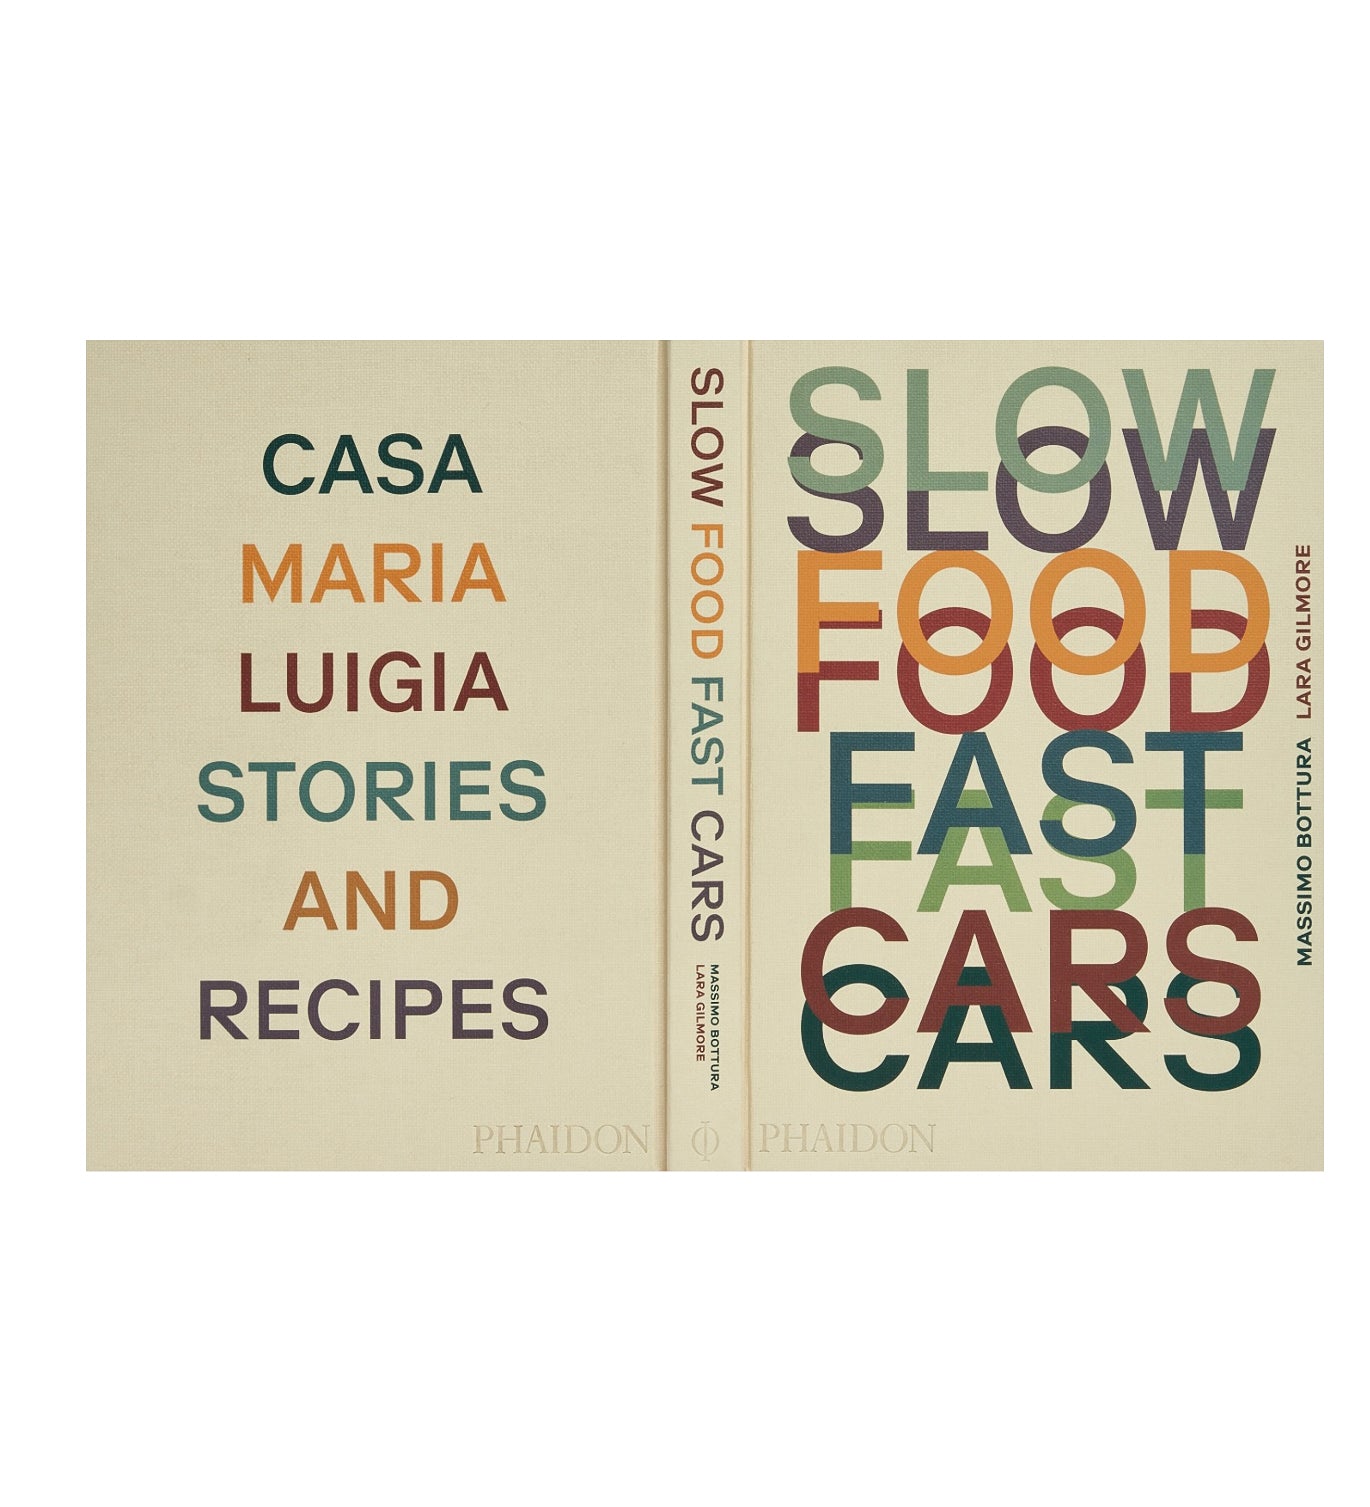 "Slow Food, Fast Cars: Casa Maria Luigia"